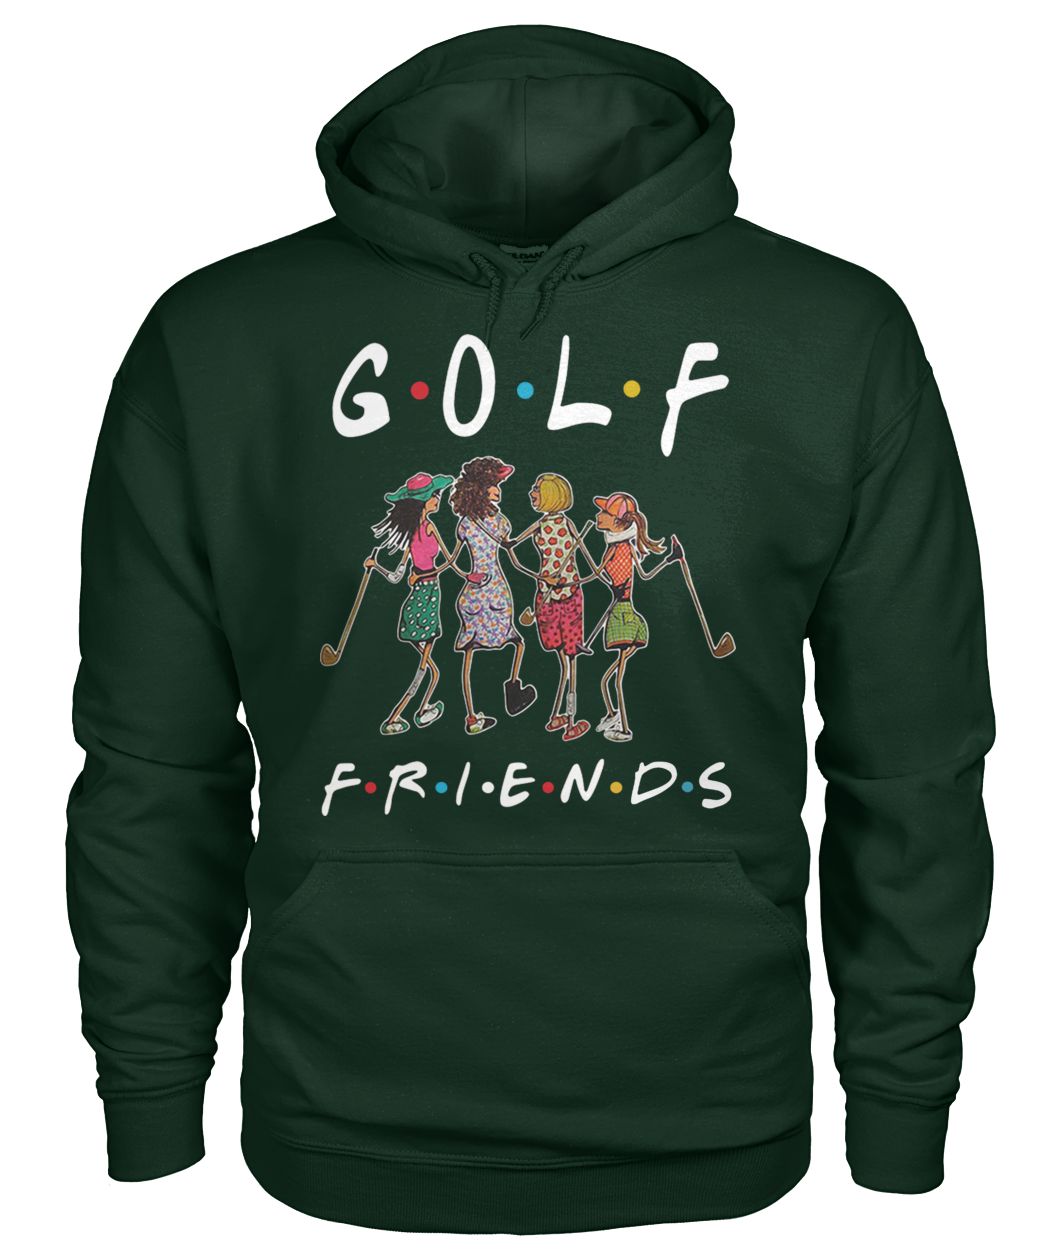 Golf friends tv show gildan hoodie